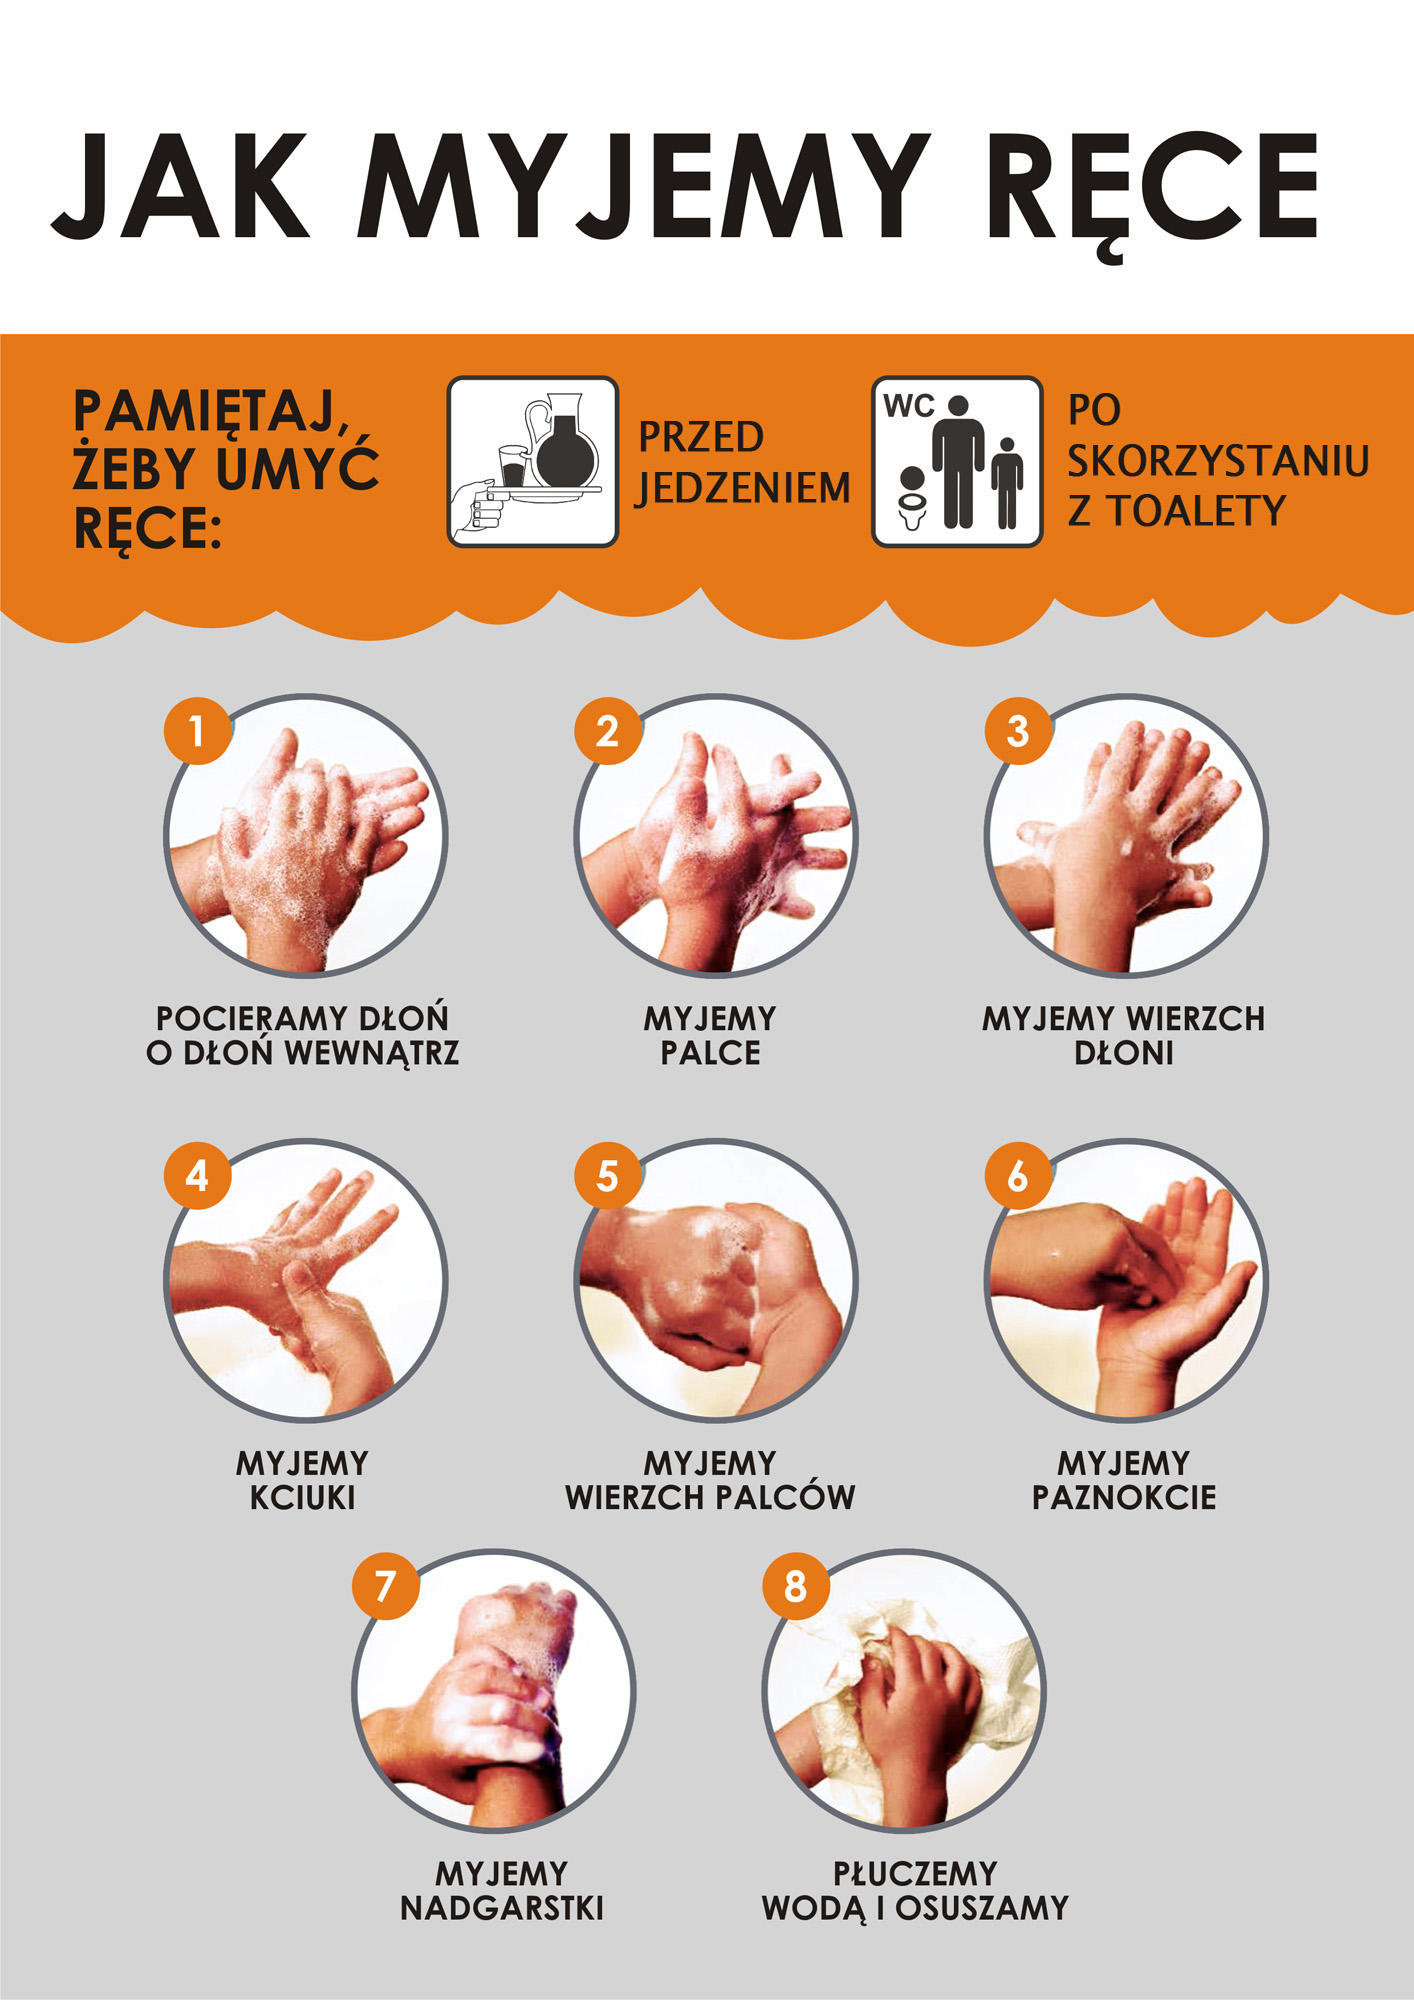 Schemat prawidłowej techniki mycia rąk, opracowany przez Światową Organizację Zdrowia (WHO).